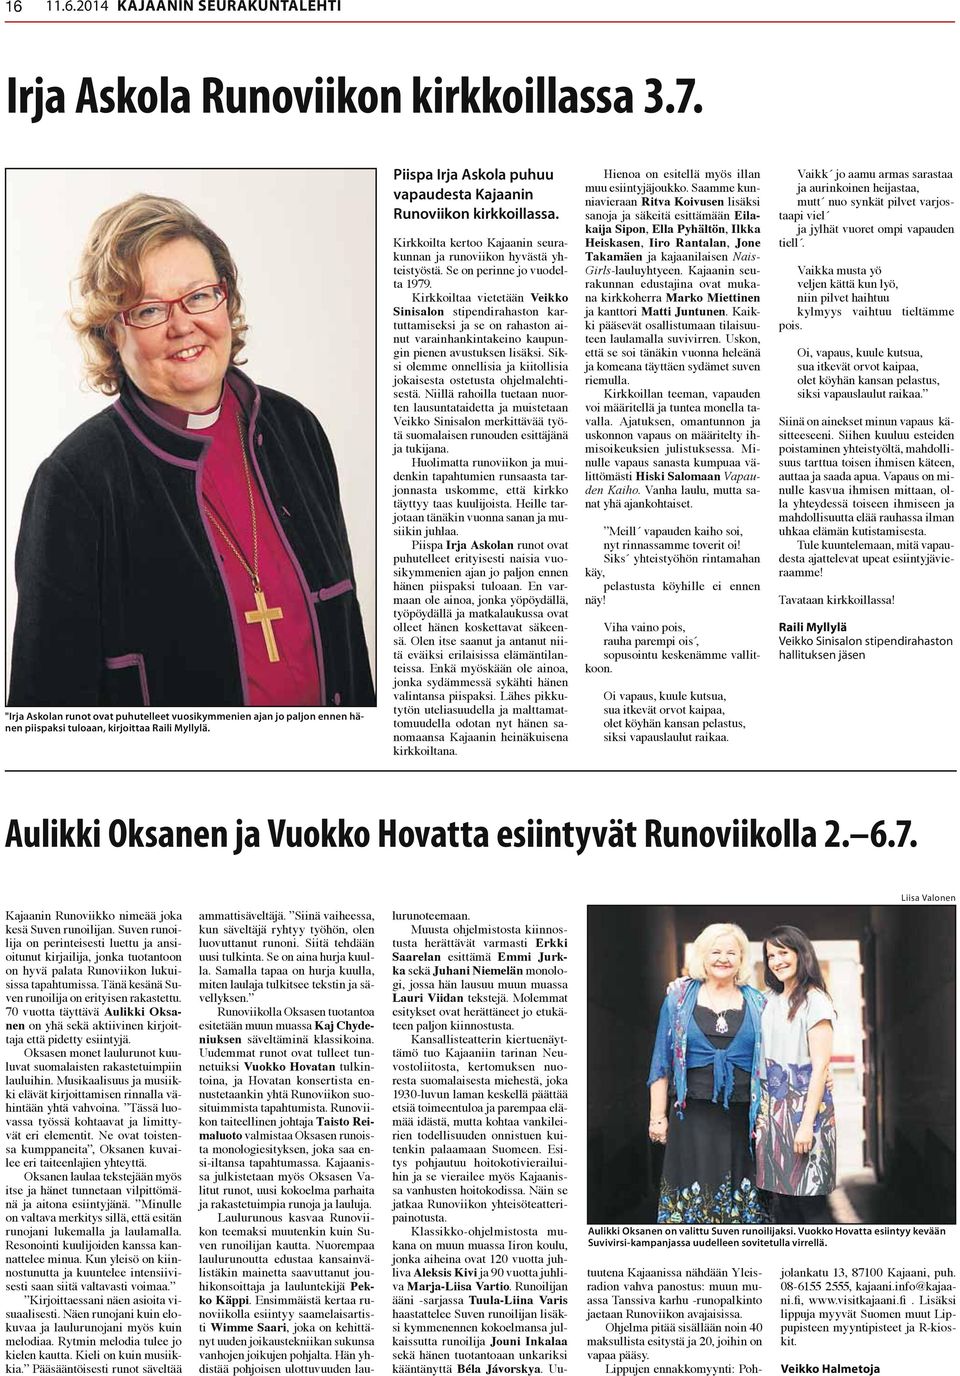 Piispa Irja Askola puhuu vapaudesta Kajaanin Runoviikon kirkkoillassa. Kirkkoilta kertoo Kajaanin seurakunnan ja runoviikon hyvästä yhteistyöstä. Se on perinne jo vuodelta 1979.